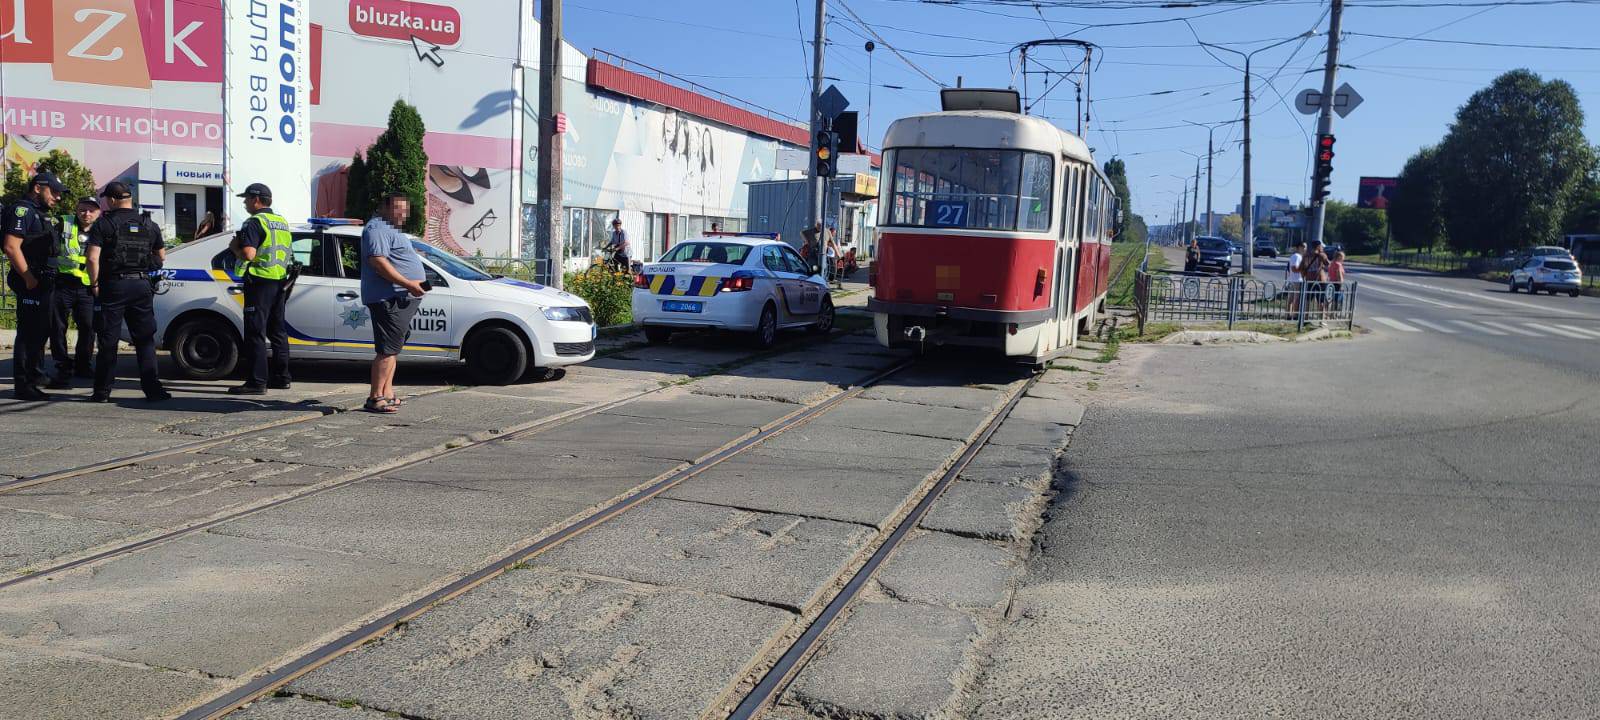 Не пропустив трамвай: в поліції розповіли обставини ДТП, в якій загинув велосипедист